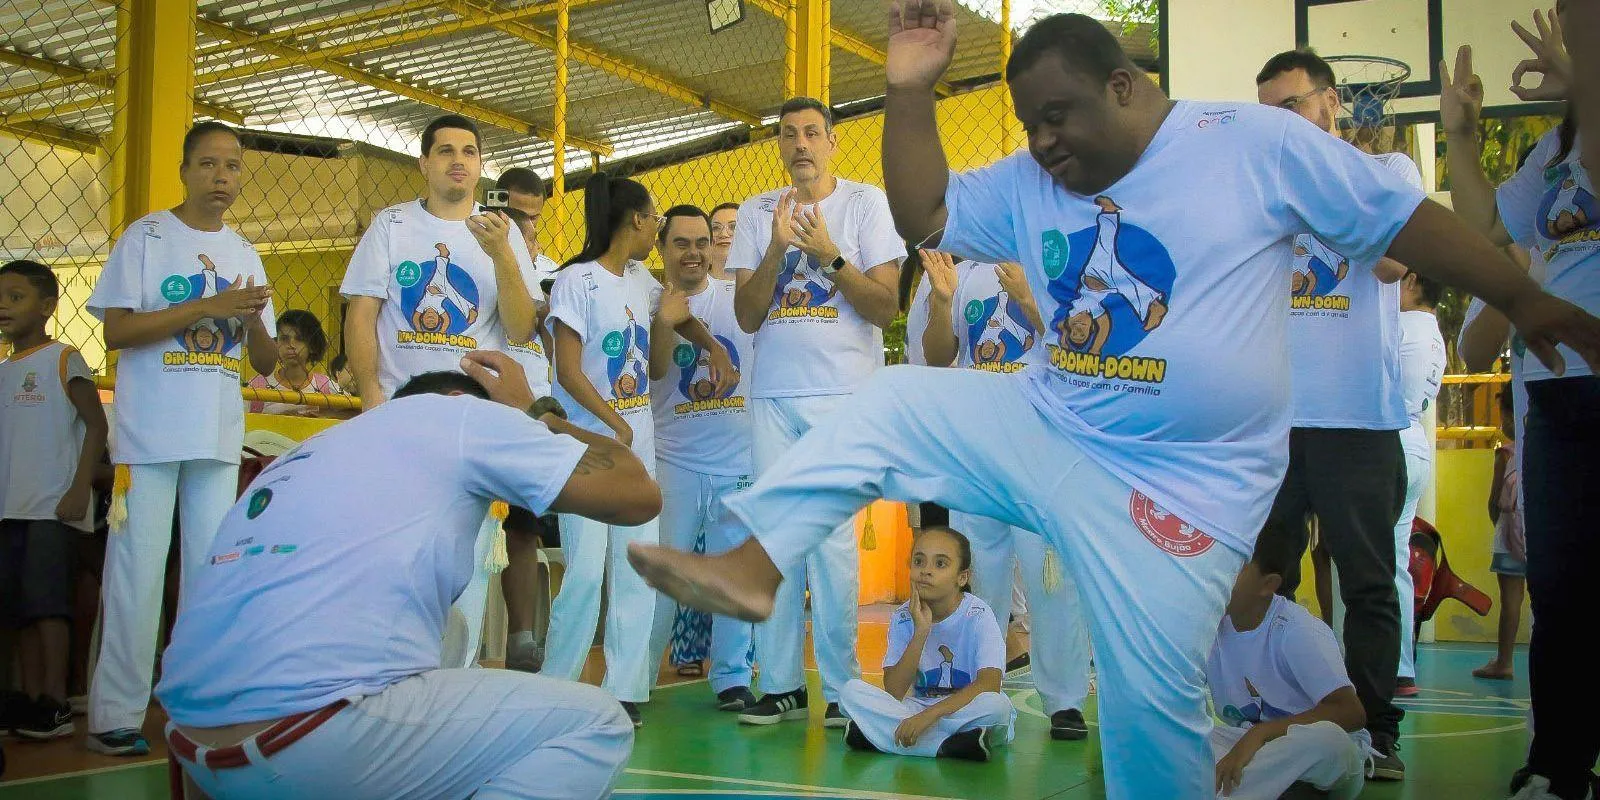 Atividades Culturais e Esportivas no Rio no Dia da Síndrome de Down: Celebração Especial e Inclusiva